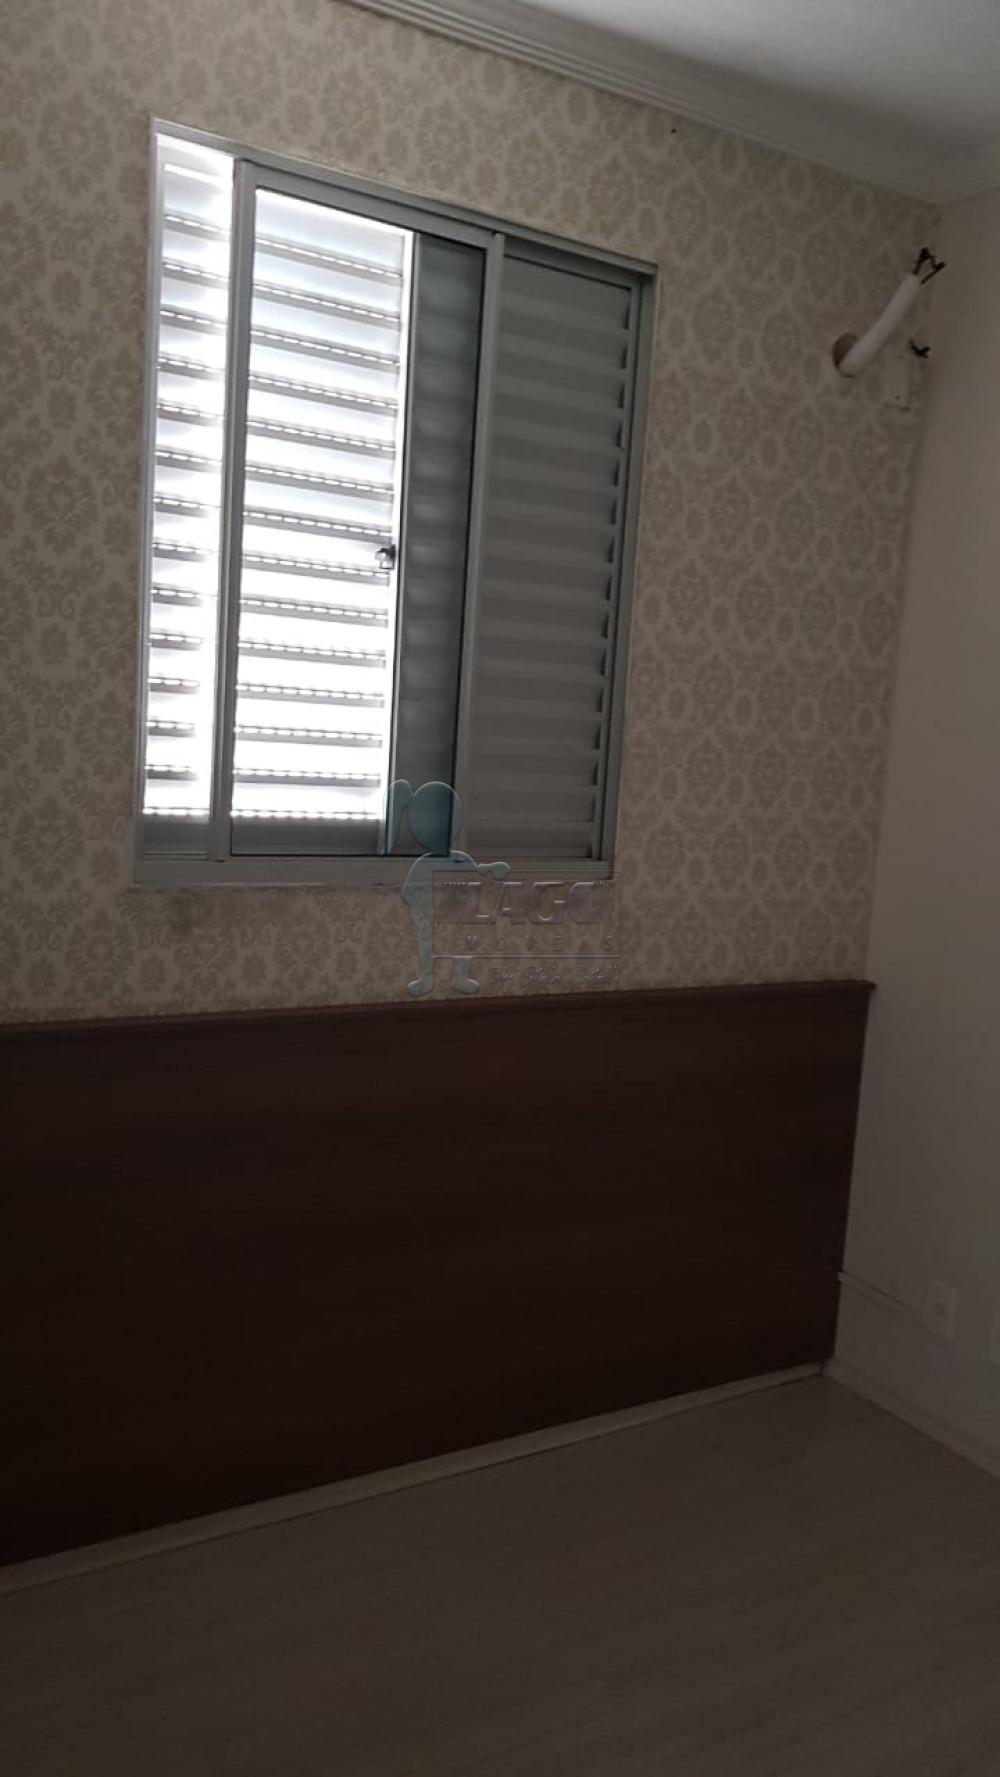 Alugar Apartamento / Padrão em Ribeirão Preto R$ 680,00 - Foto 4